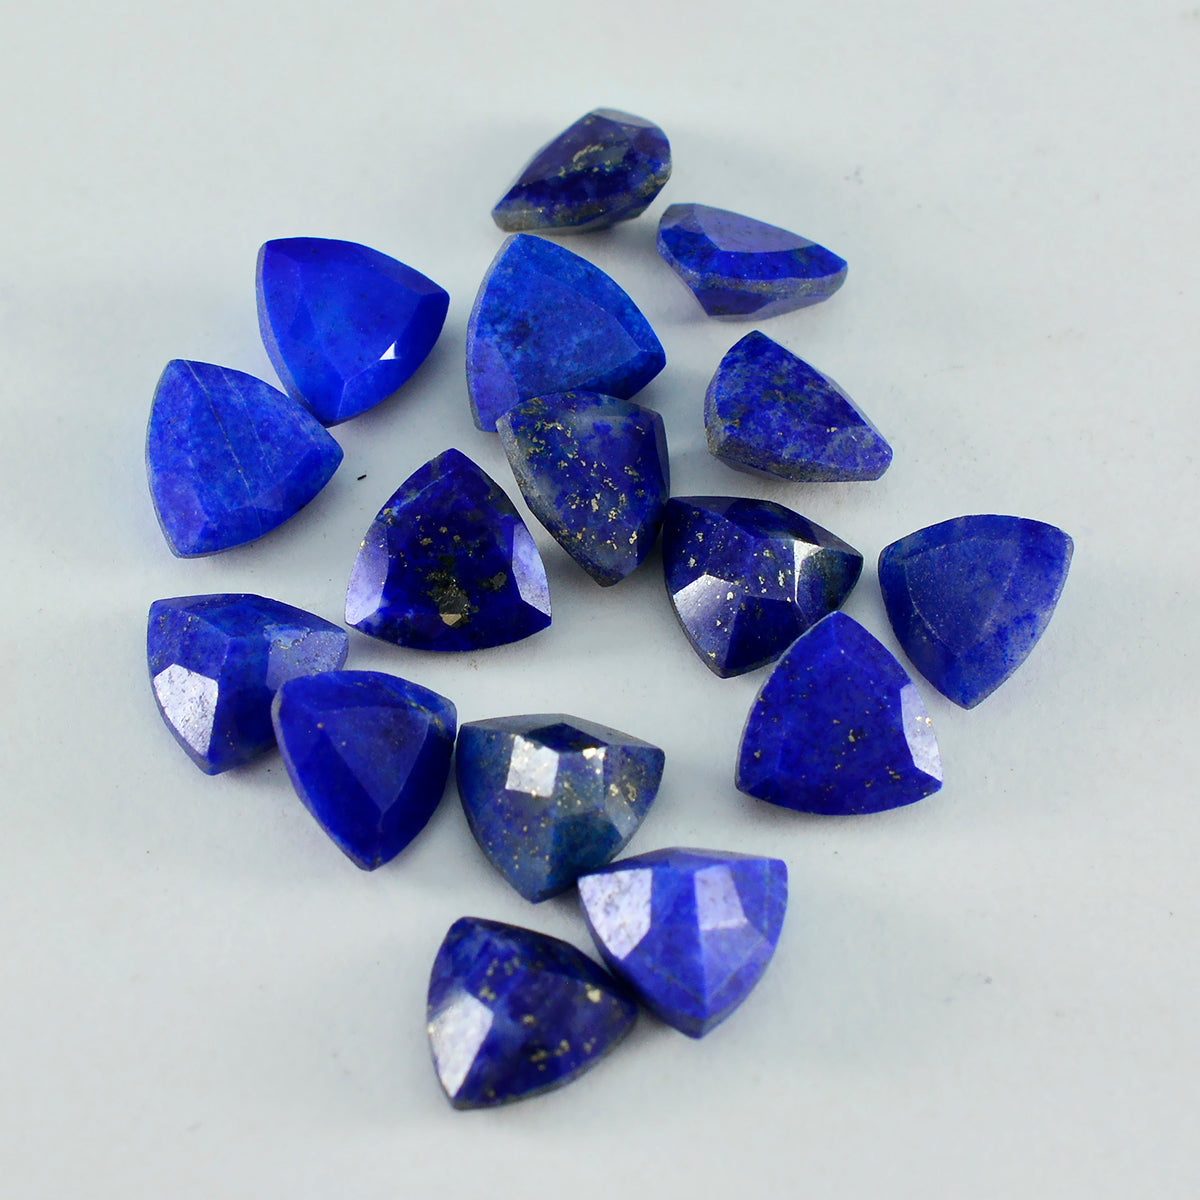 Riyogems, 1 pieza, lapislázuli azul auténtico facetado, 7x7mm, forma de billón, gemas sueltas de calidad y belleza